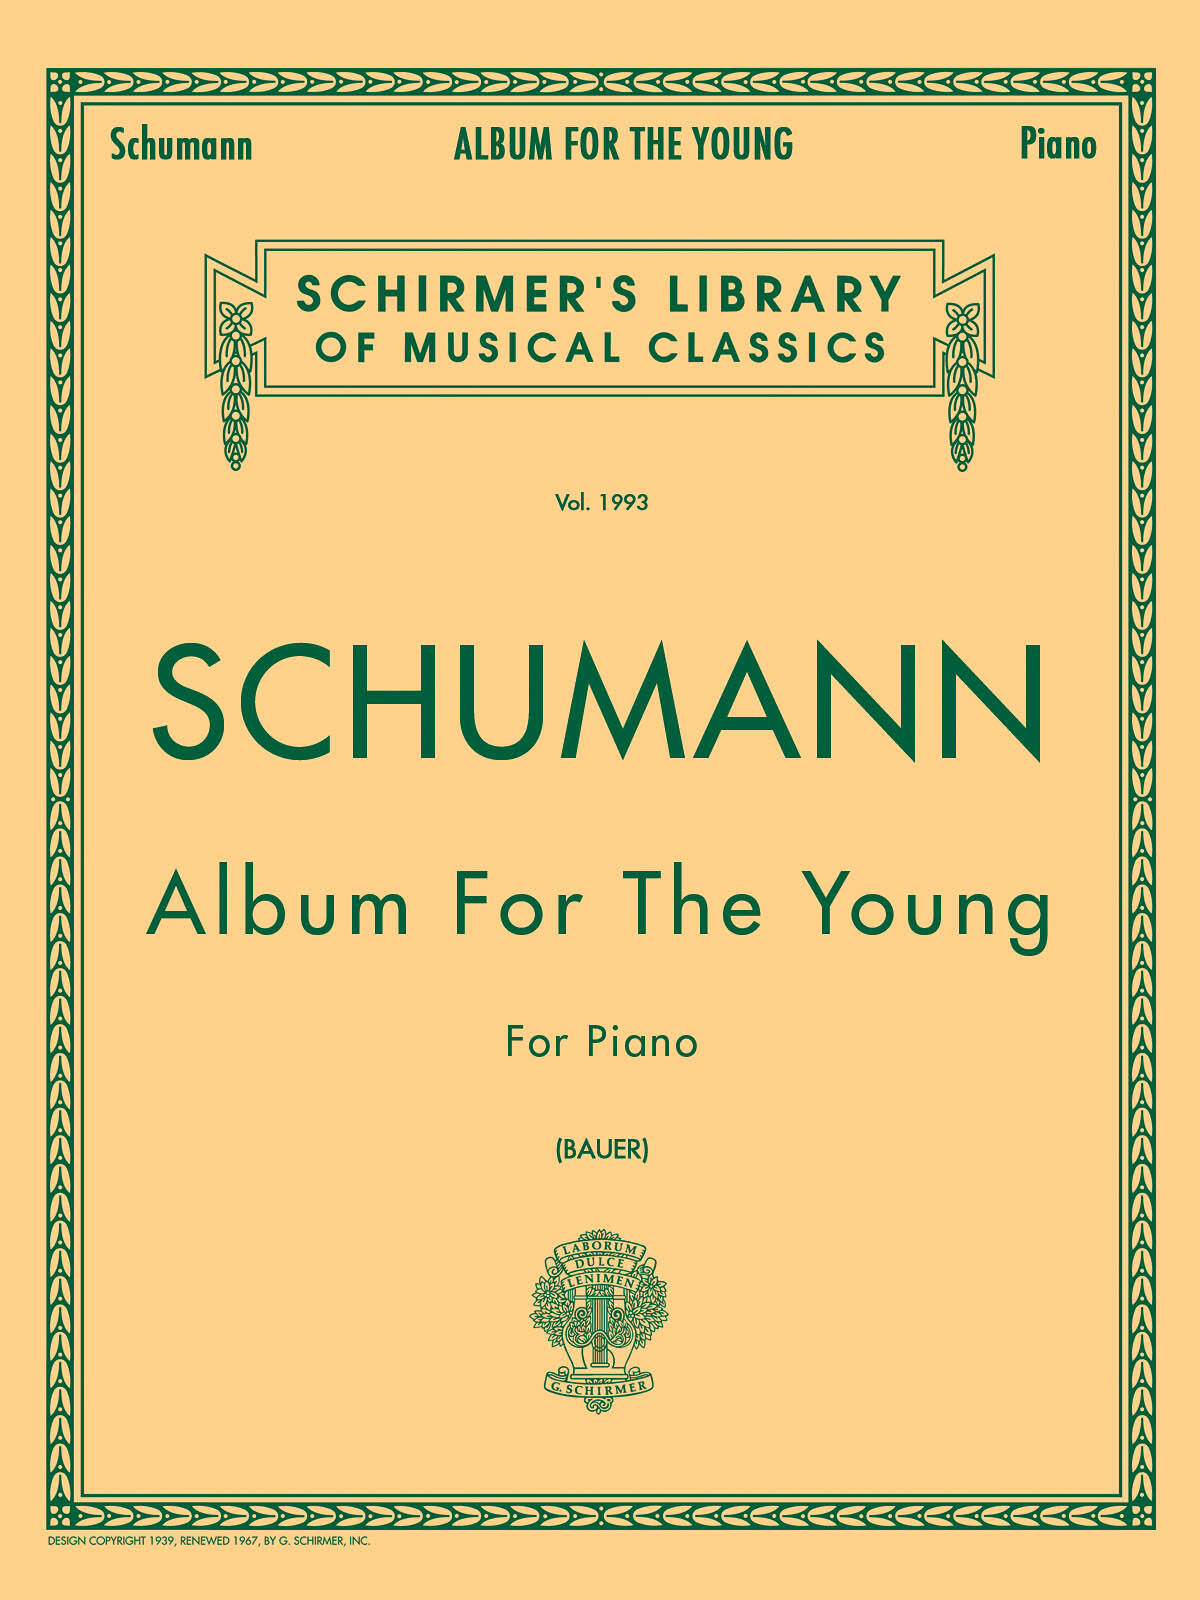 Album For The Young Op. 68 Robert Schumann : photo 1